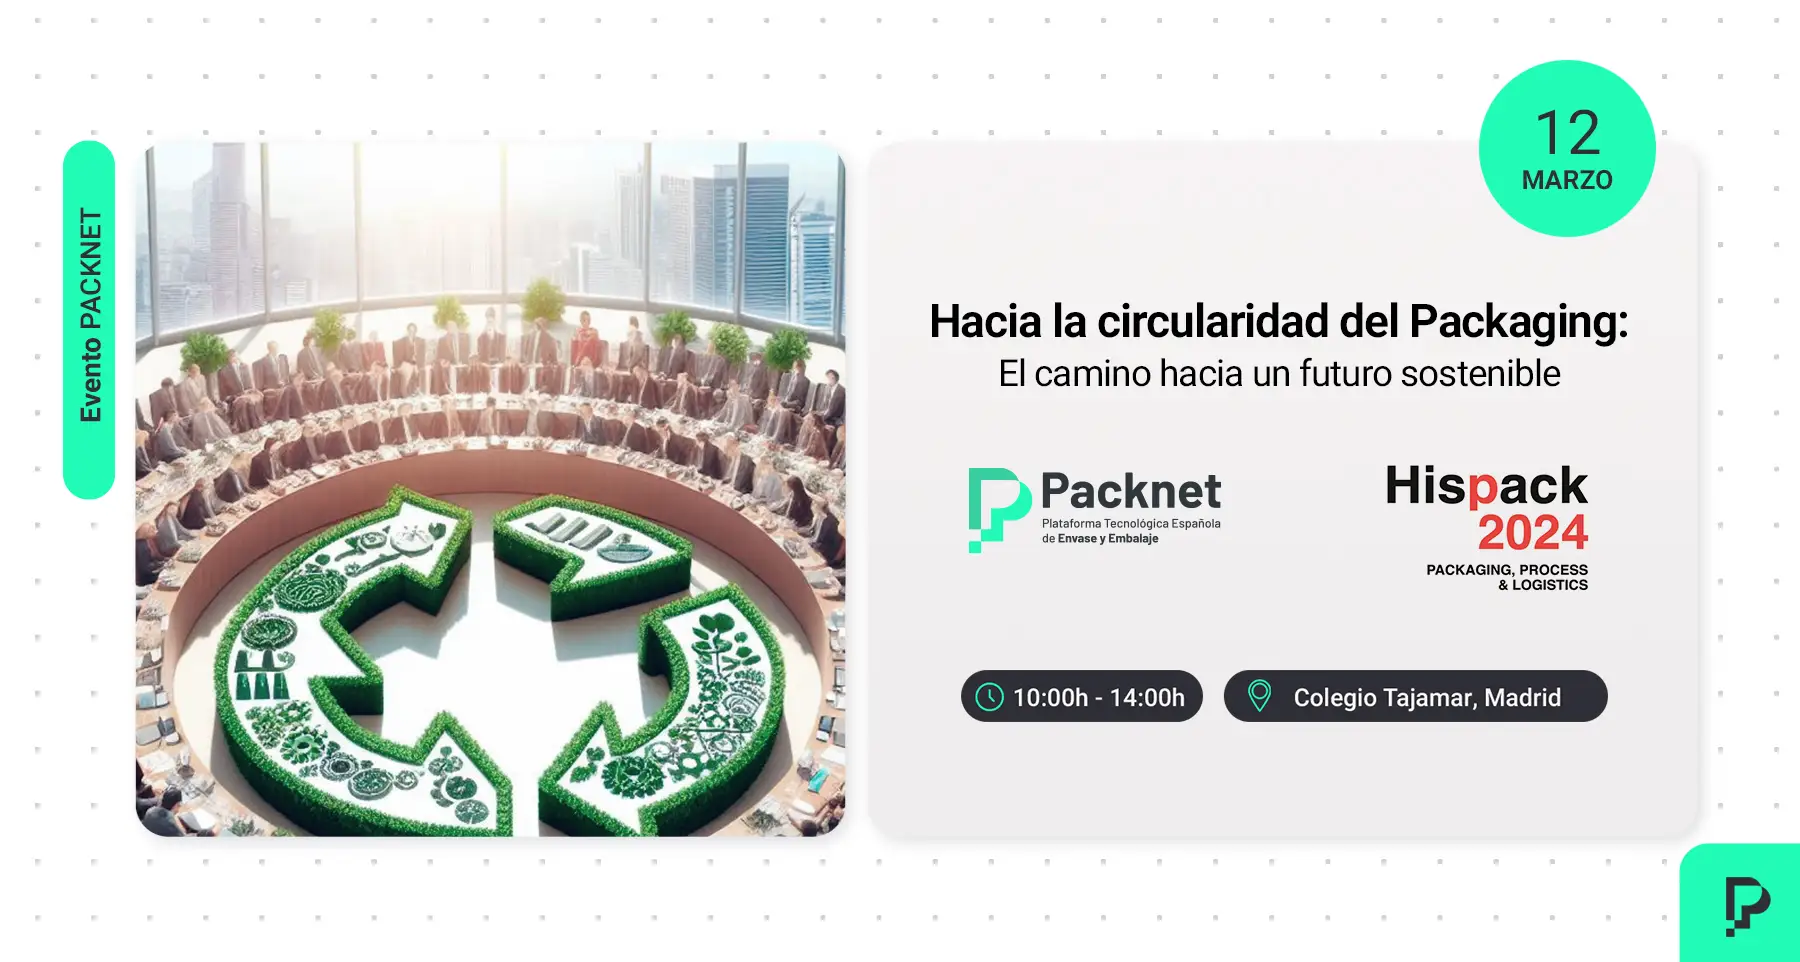 Packnet organiza la Jornada: “Hacia la circularidad del Packaging: el camino hacia un futuro sostenible”